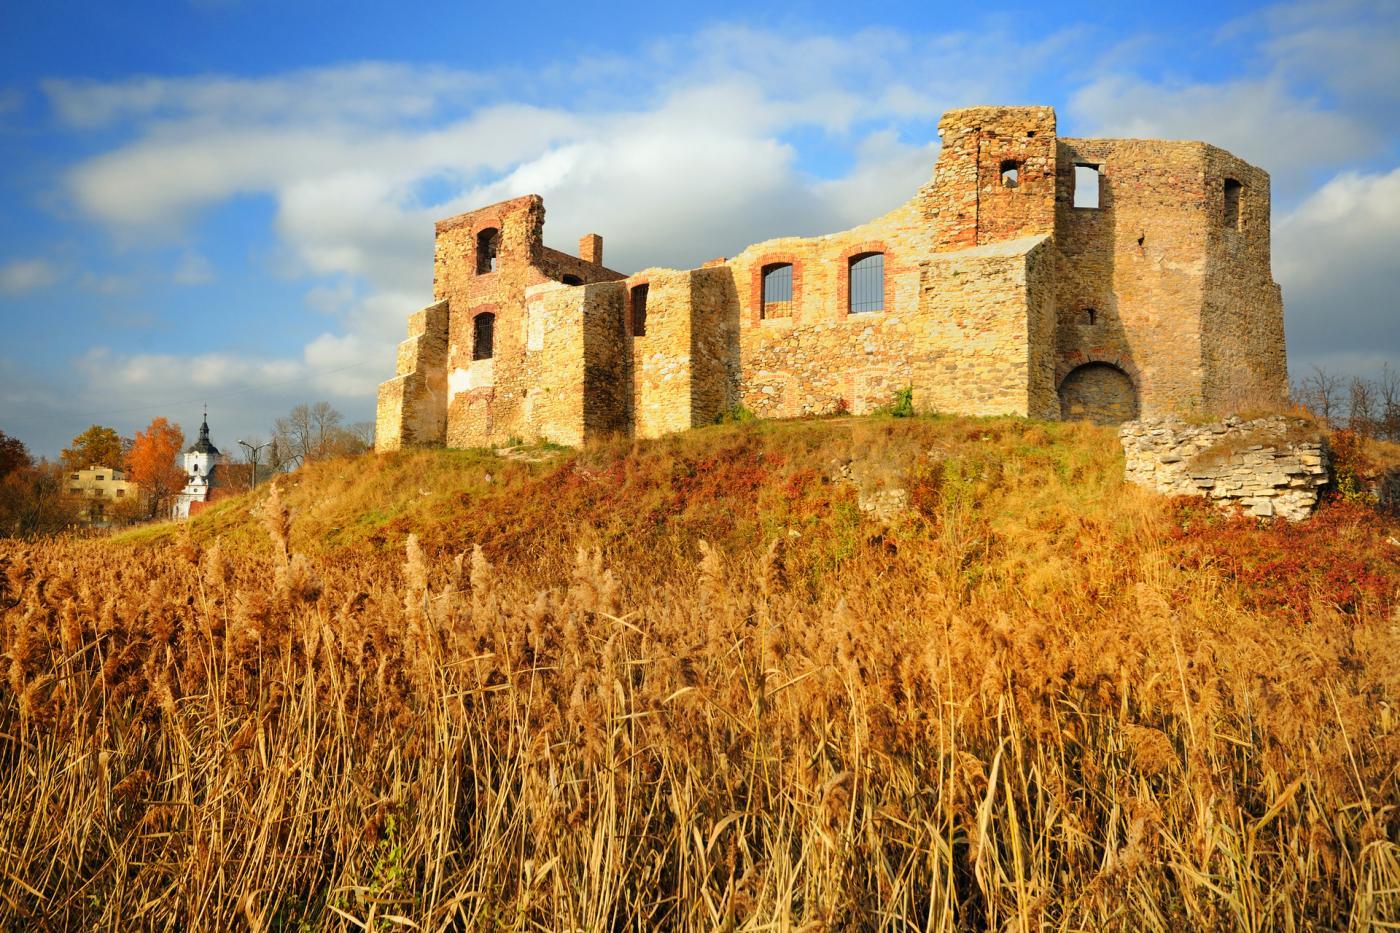 zamek w siewierzu – zamki w największej ruinie